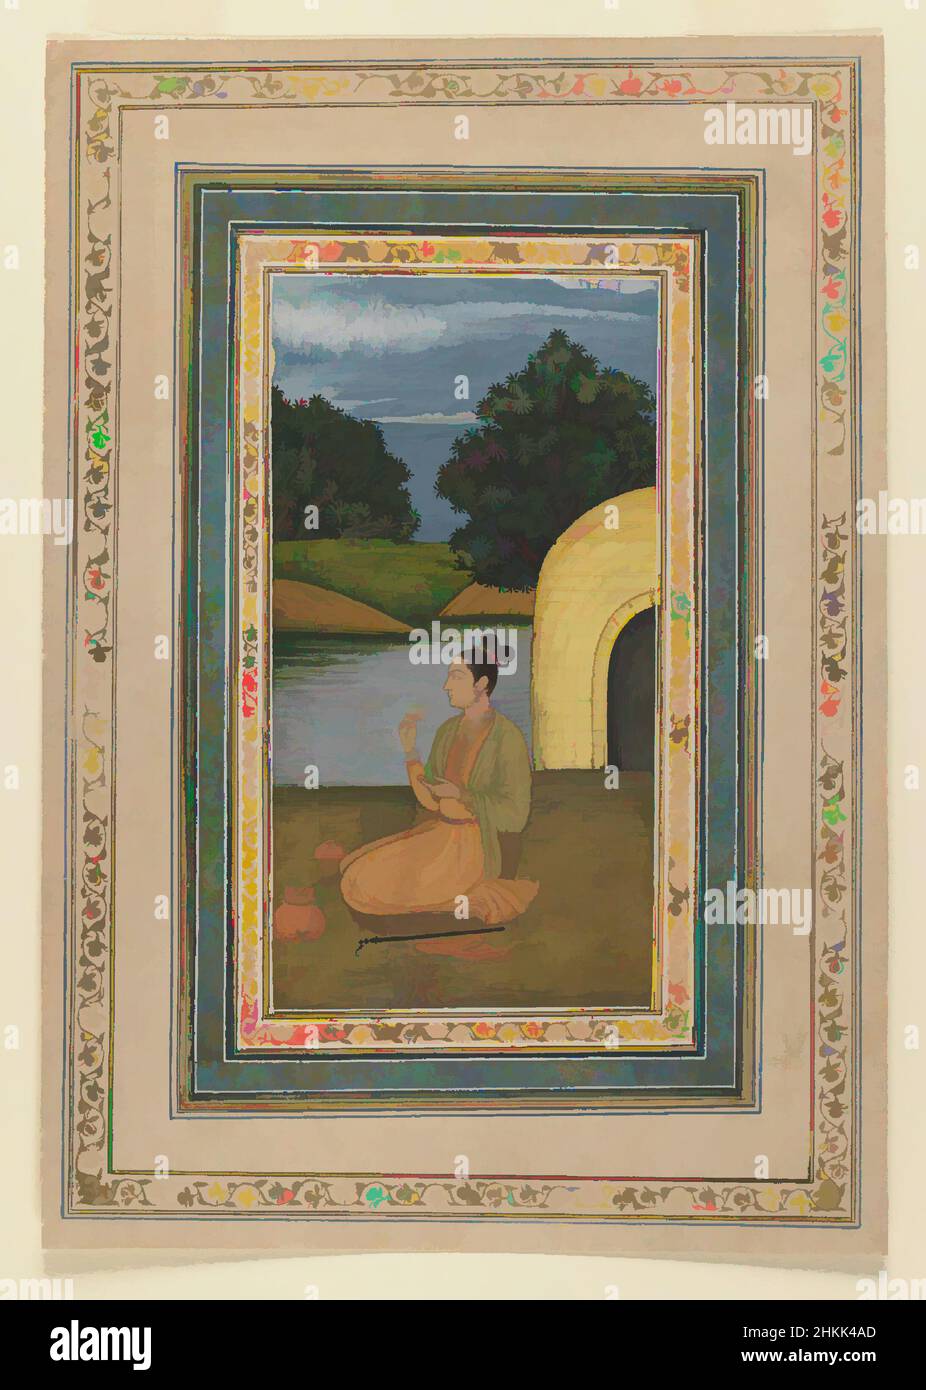 Kunst inspiriert von Yogini in a Landscape, indisch, opakes Aquarell auf Papier, Lucknow, Oudh, Indien, ca. 1760, Mughal, Blatt: 11 3/8 x 7 7/8 in., 28,9 x 20,0 cm, Blüte, hindu, Indisches Gemälde, Knien, Landschaft, Lucknow, Mughal, Nastaliq Skript, Oudh, Papier, Poesie, Aquarell, Yogini, Klassische Werke, die von Artotop mit einem Schuss Moderne modernisiert wurden. Formen, Farbe und Wert, auffällige visuelle Wirkung auf Kunst. Emotionen durch Freiheit von Kunstwerken auf zeitgemäße Weise. Eine zeitlose Botschaft, die eine wild kreative neue Richtung verfolgt. Künstler, die sich dem digitalen Medium zuwenden und die Artotop NFT erschaffen Stockfoto